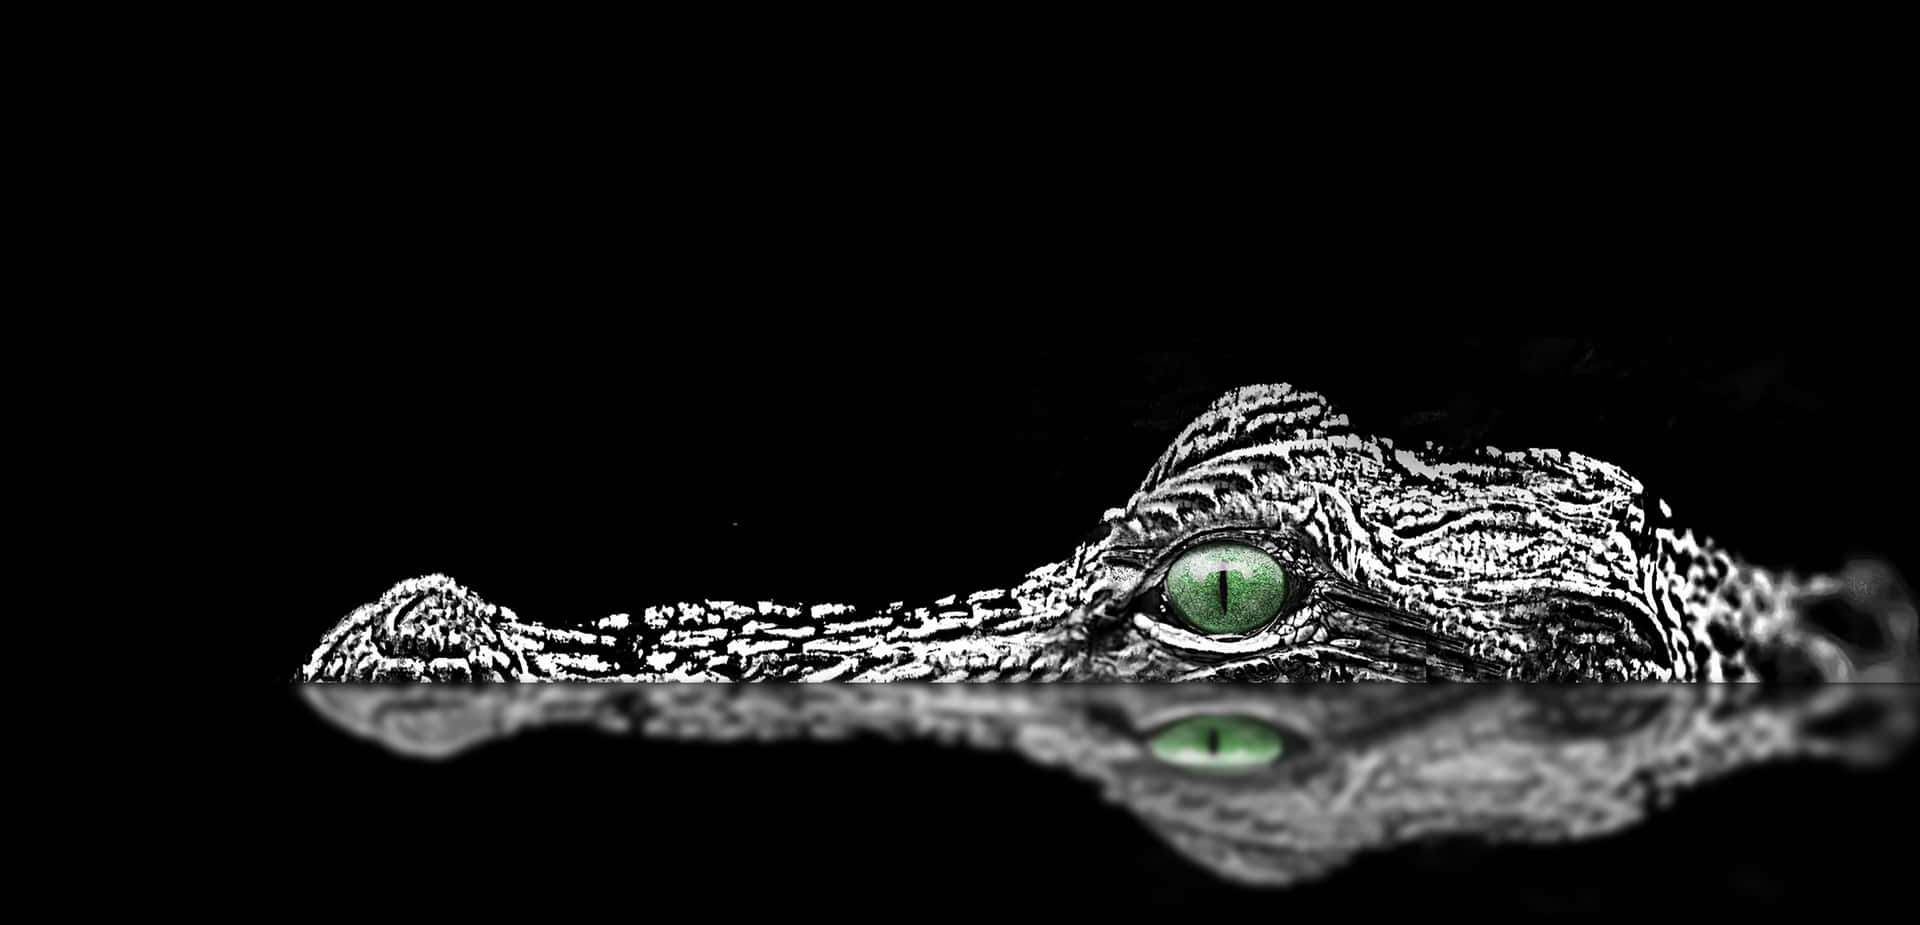 Ennärbild Av En Alligator Som Vilar I Sin Naturliga Miljö.